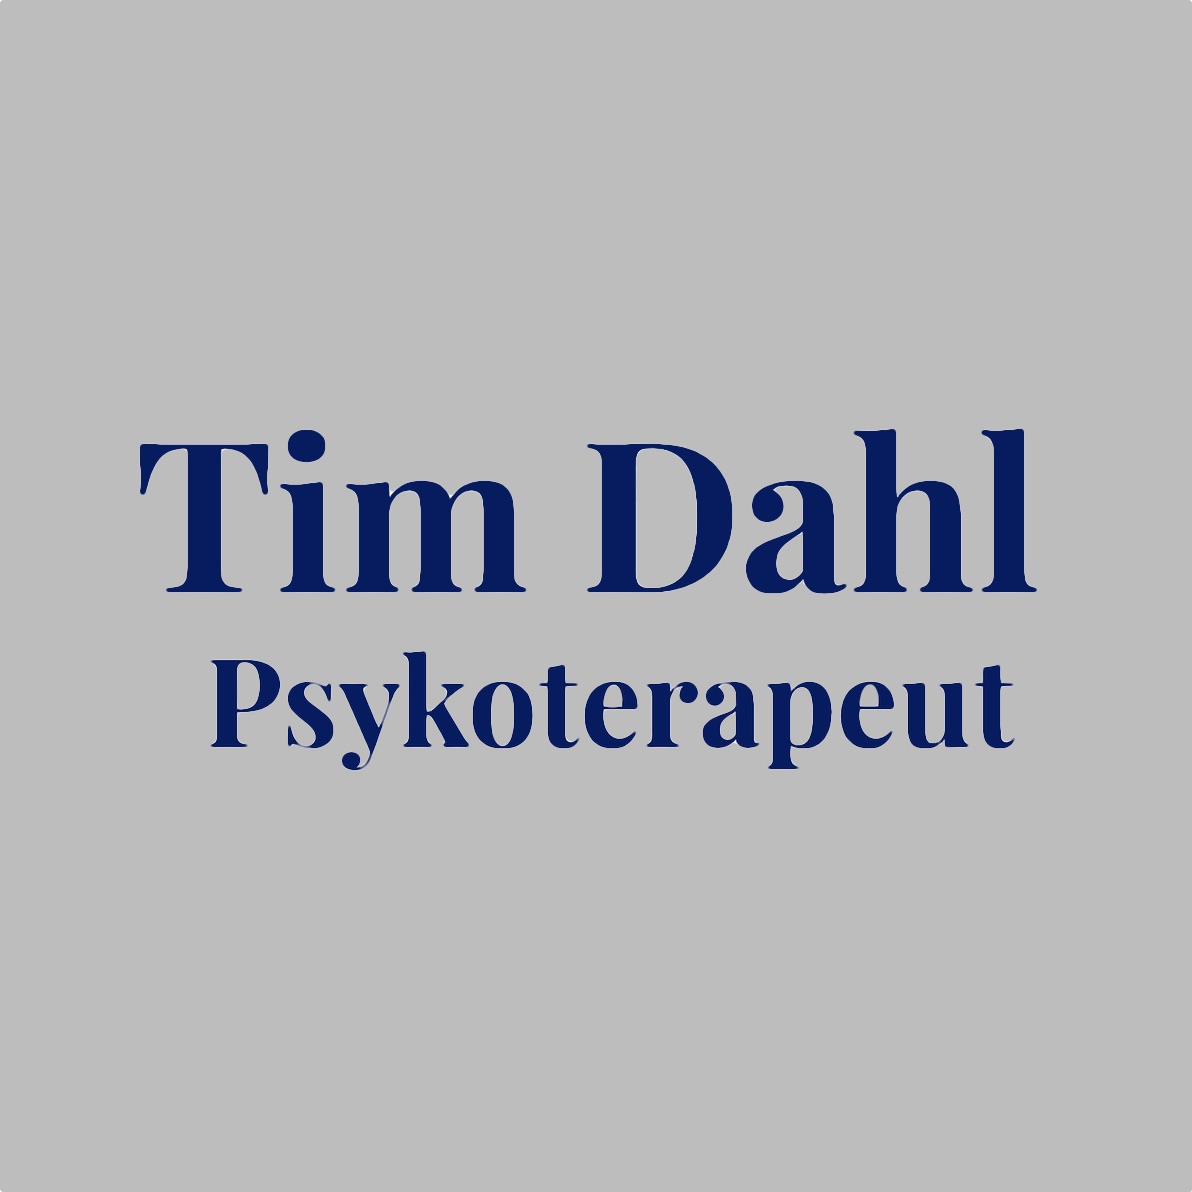 Tim Dahl anbefaling